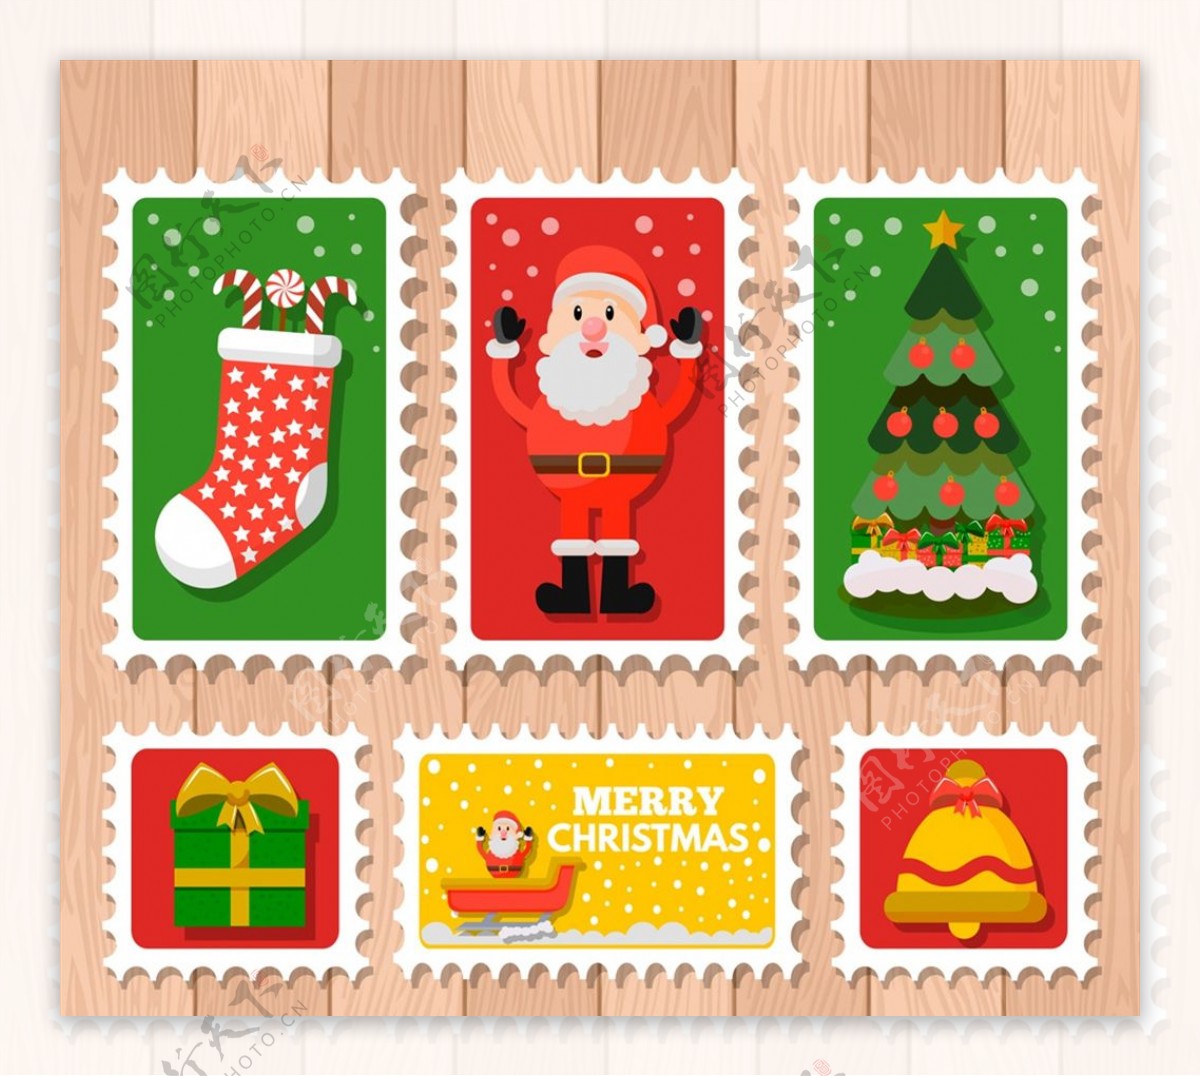 彩色圣诞邮票图片